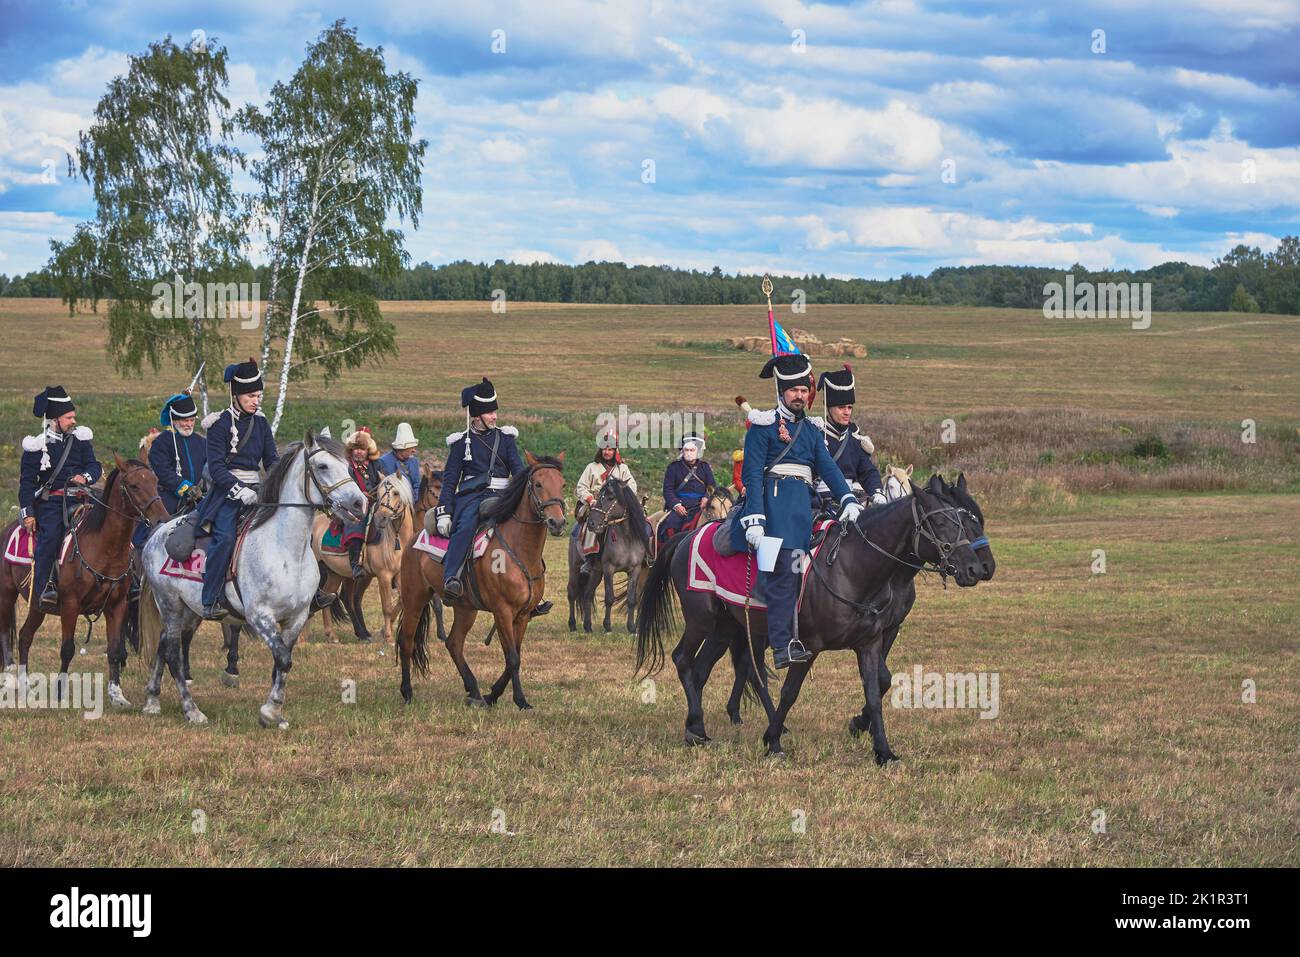 Rekonstruktion der Schlacht von 1812 auf dem Borodino-Feld. Die Menschen ziehen die Kostüme der russischen und französischen Armeen des 19.. Jahrhunderts an. Stockfoto